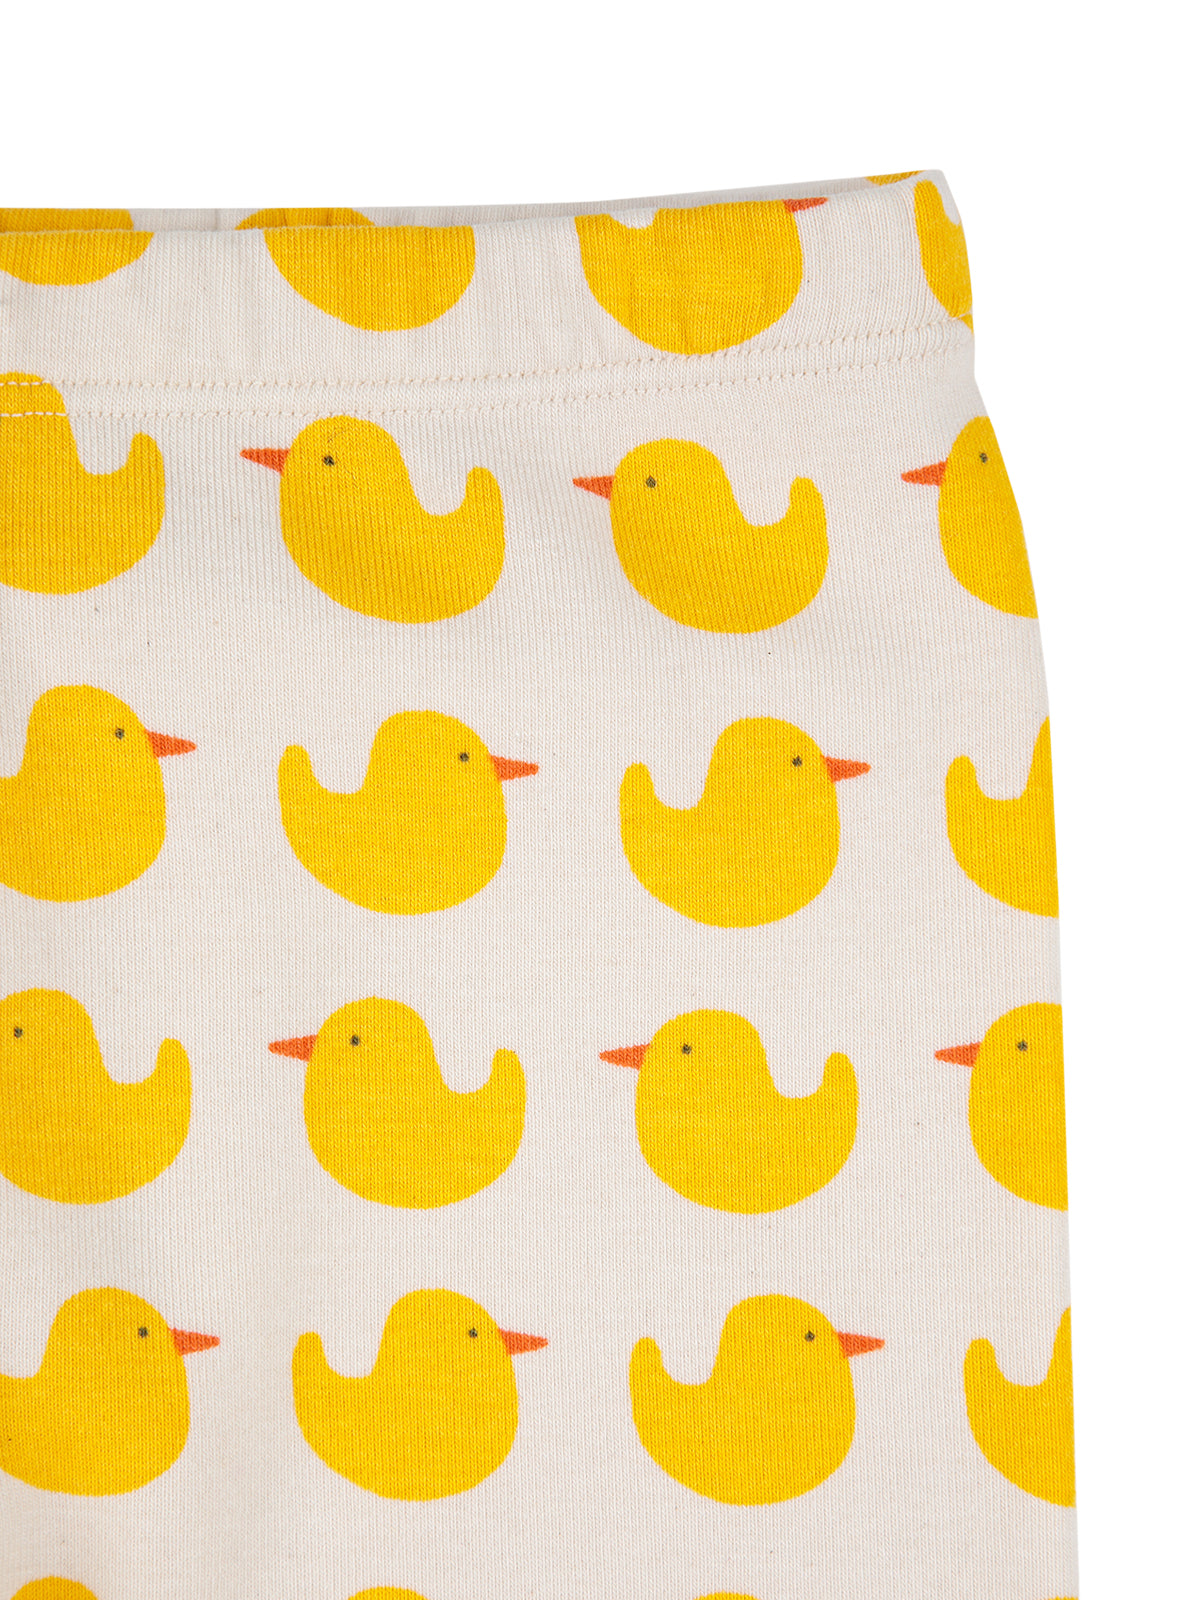 Rubber Duck schoolbag – Bobo Choses